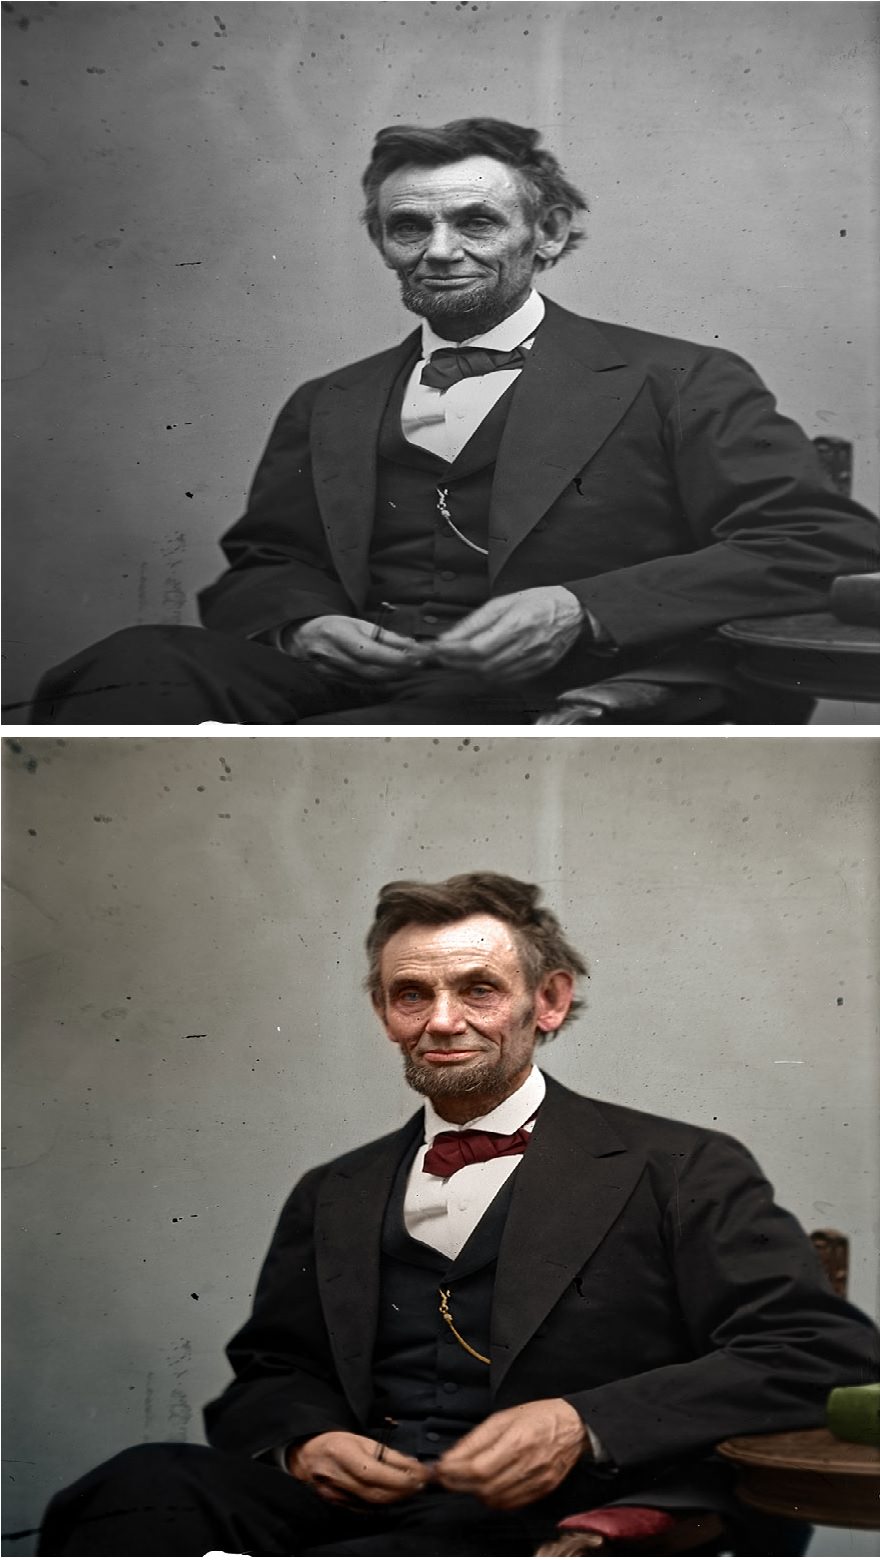 Abraham Lincoln by Alexander Gardner, taken in February, 1865